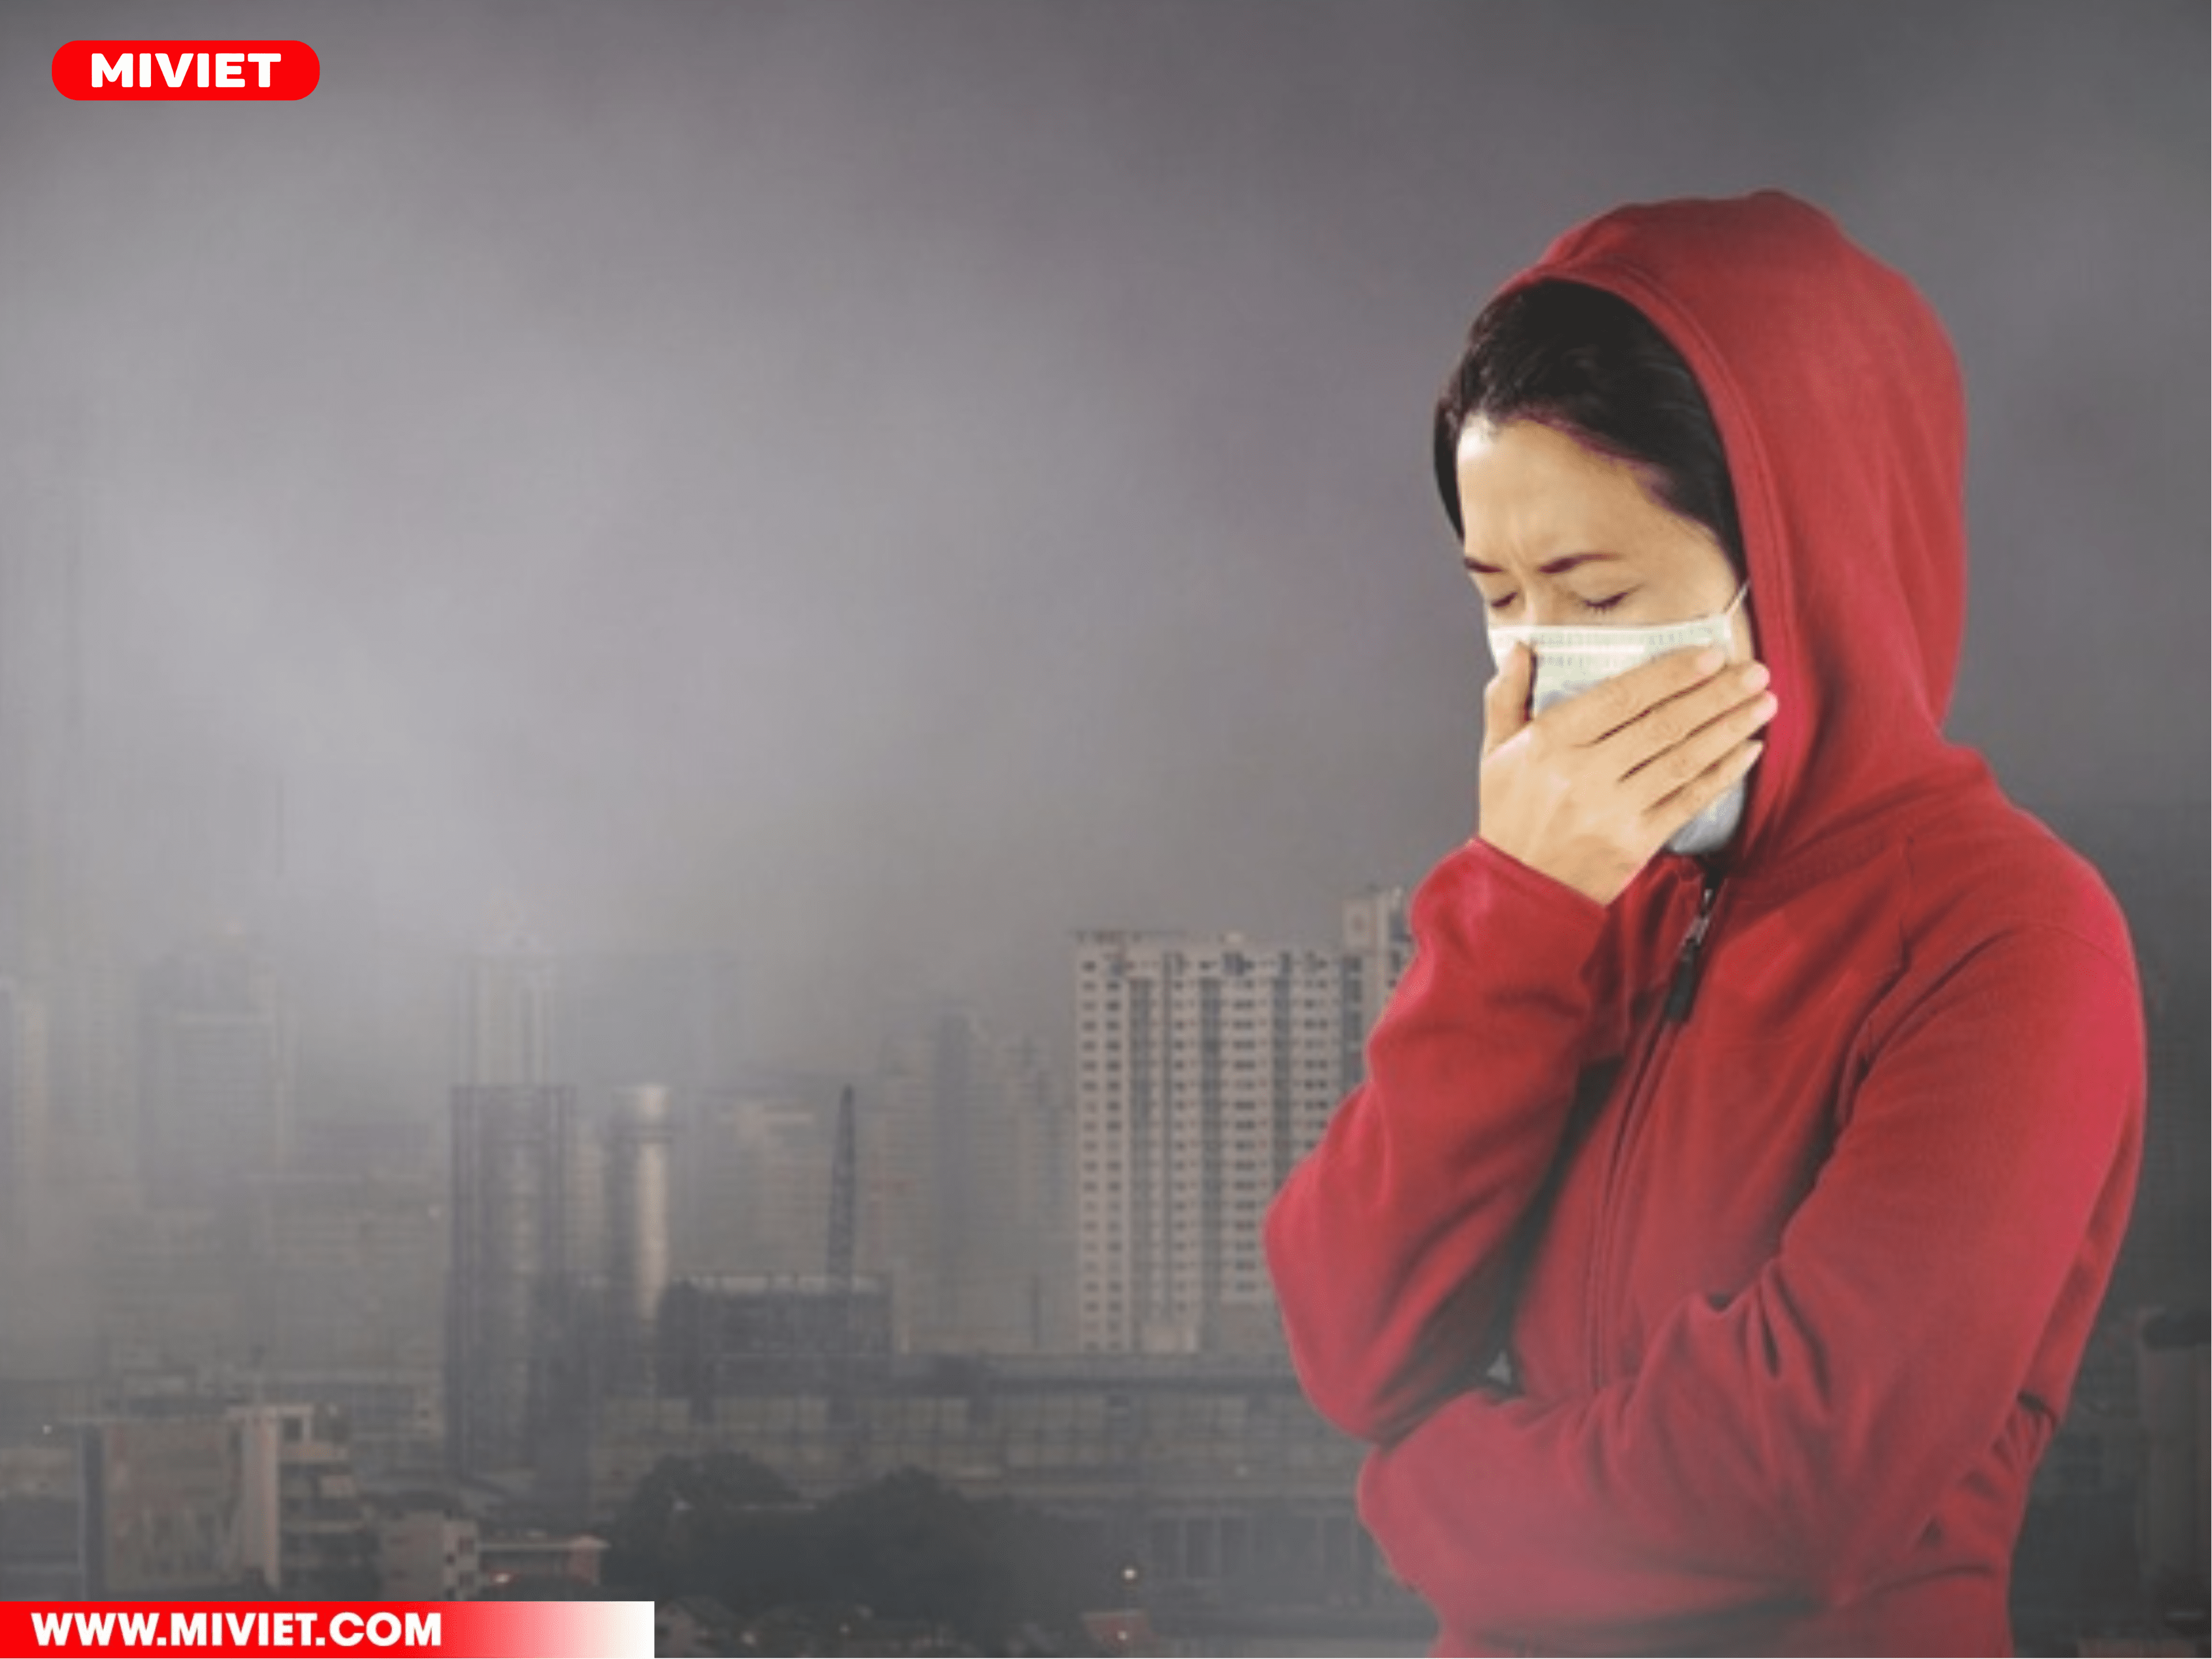 Tình trạng ô nhiễm không khí hiện nay càng nghiêm trọng 